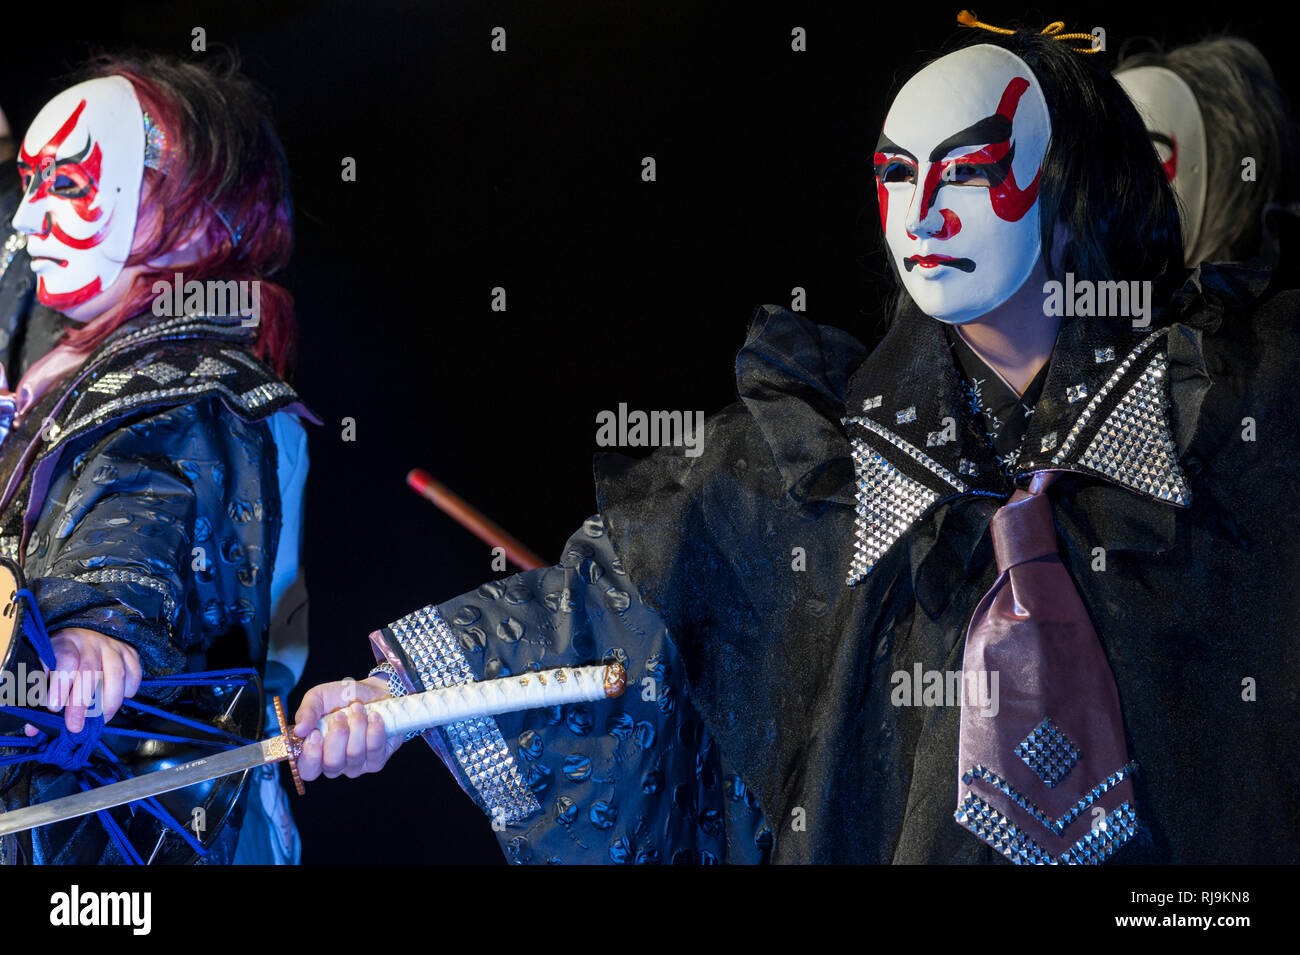 Firenze, Italia - 18 Novembre 2017: giapponese ballerini con maschere tradizionali e katana, durante una performance al "Festival giapponese 2017'. Foto Stock